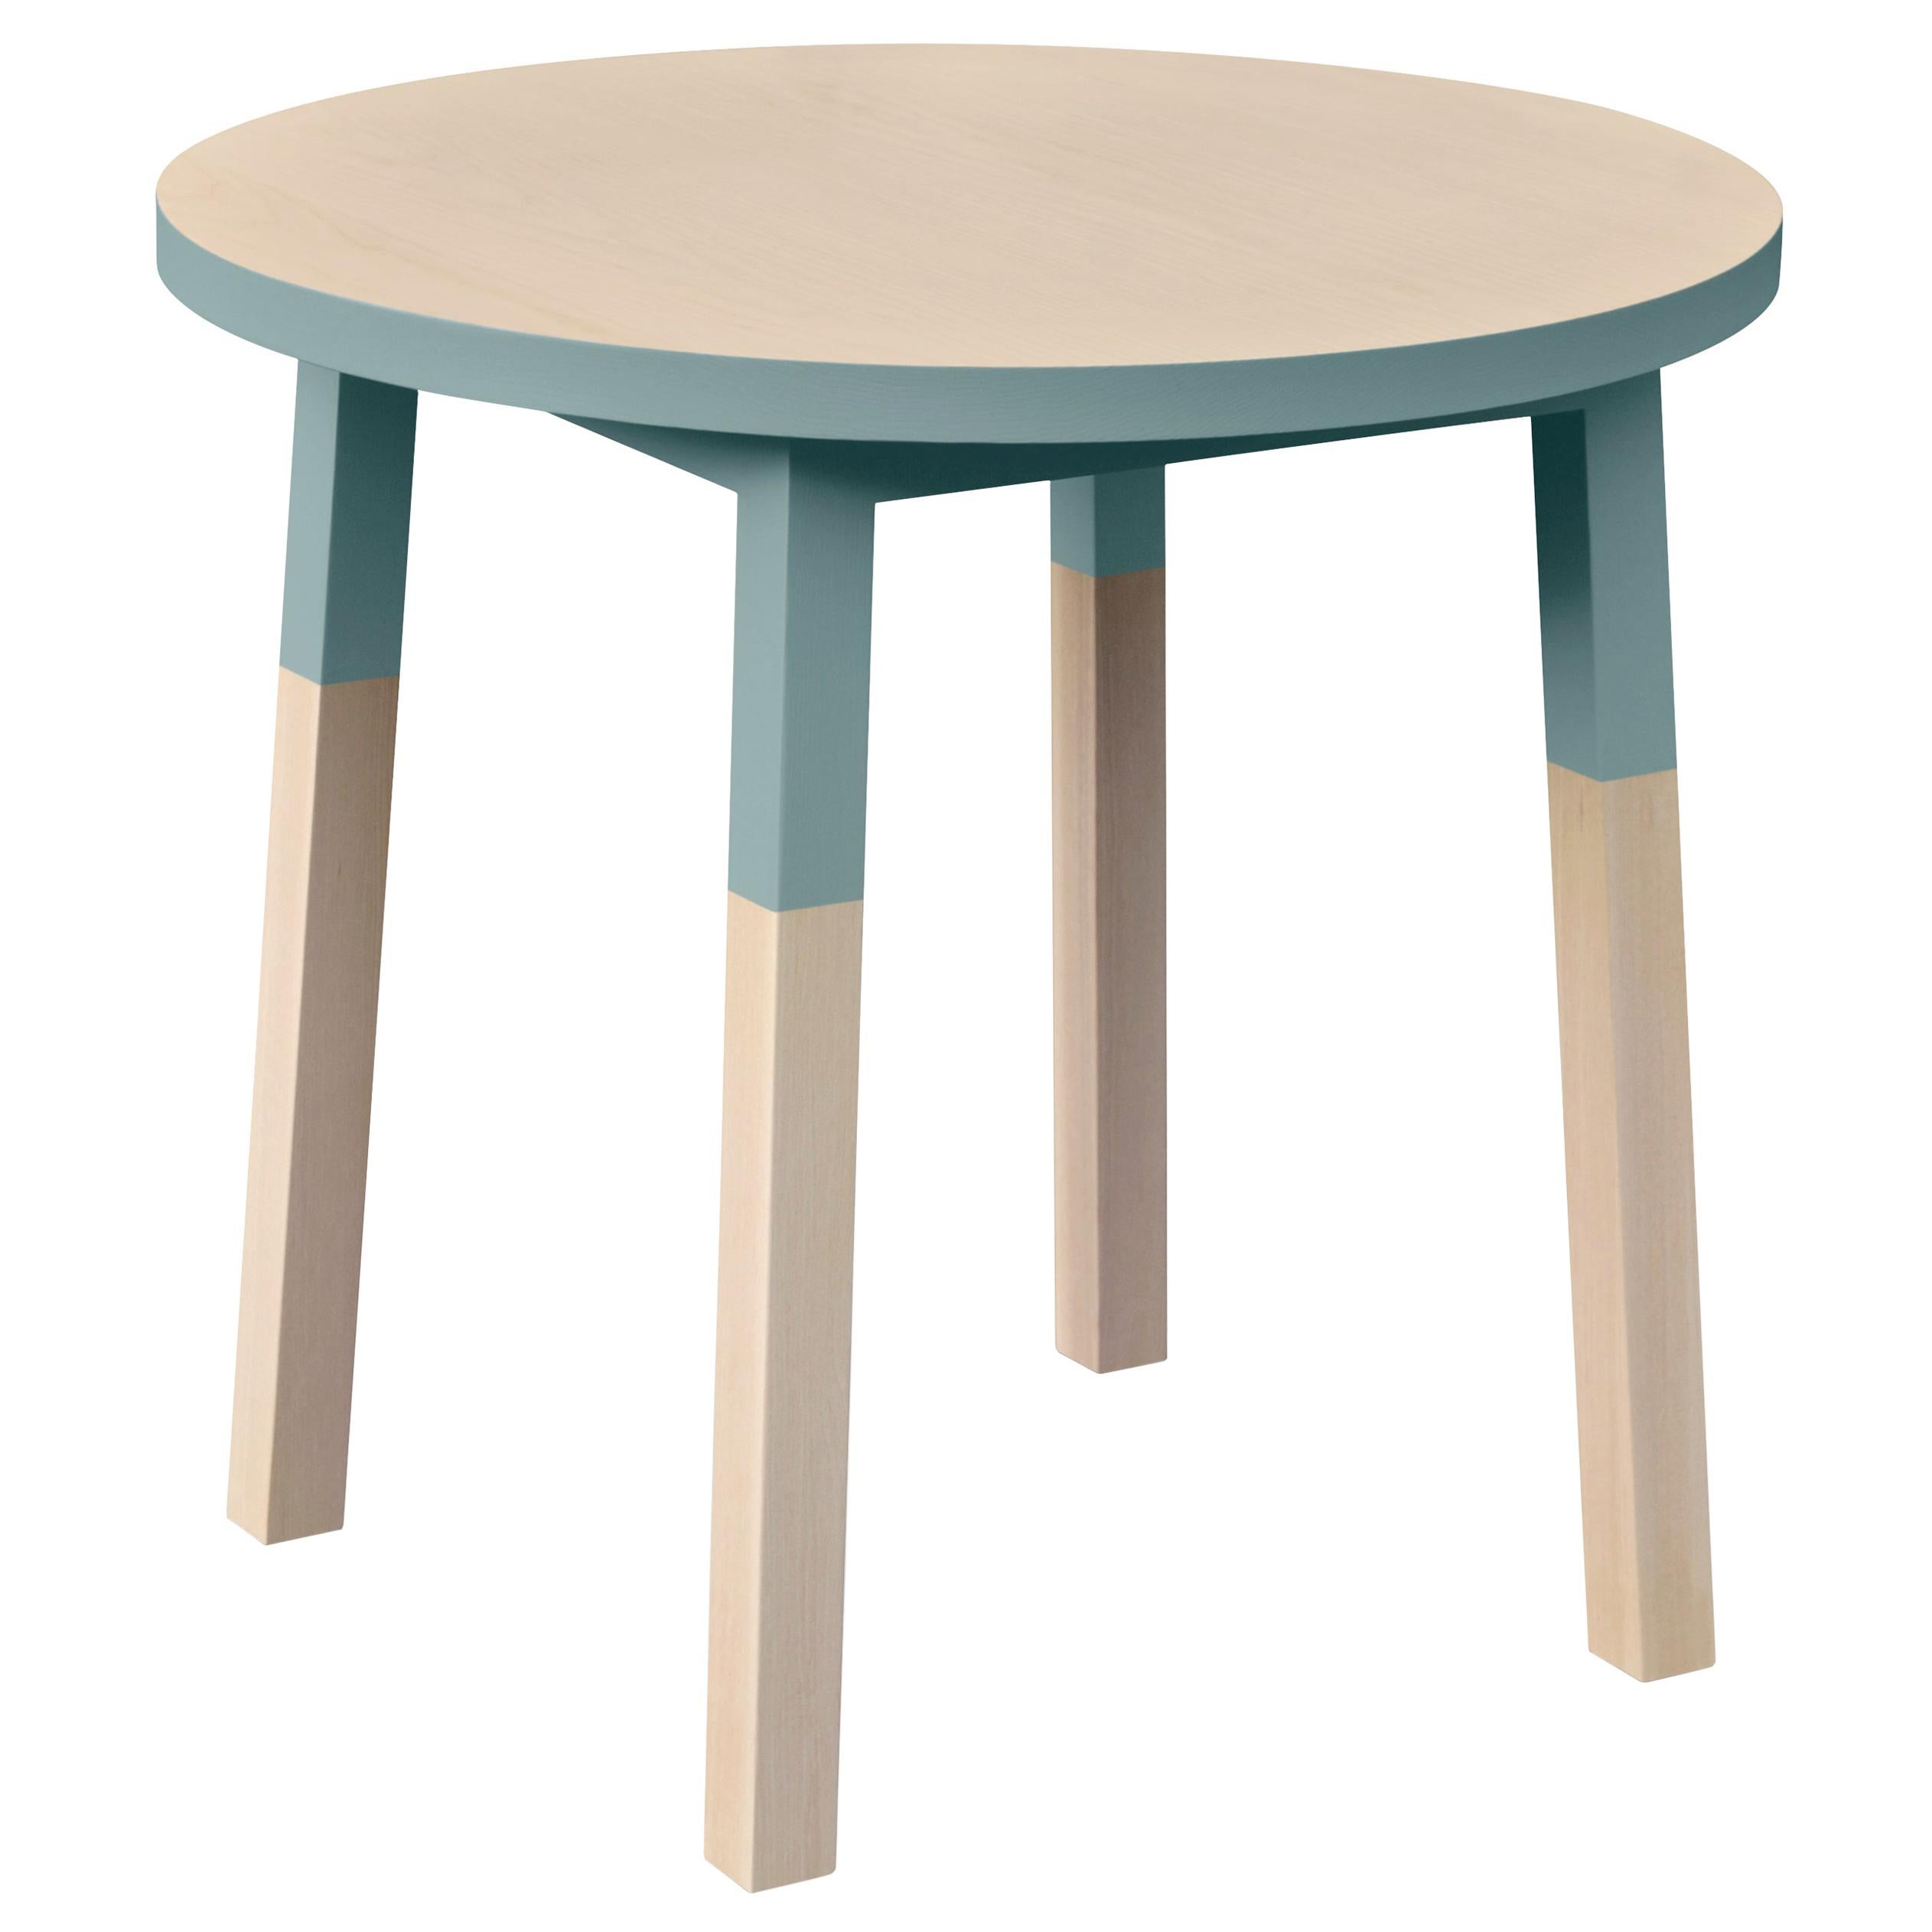 Runder runder Tisch, süd skandinavisches Design von Eric Gizard, 100 % Made in France